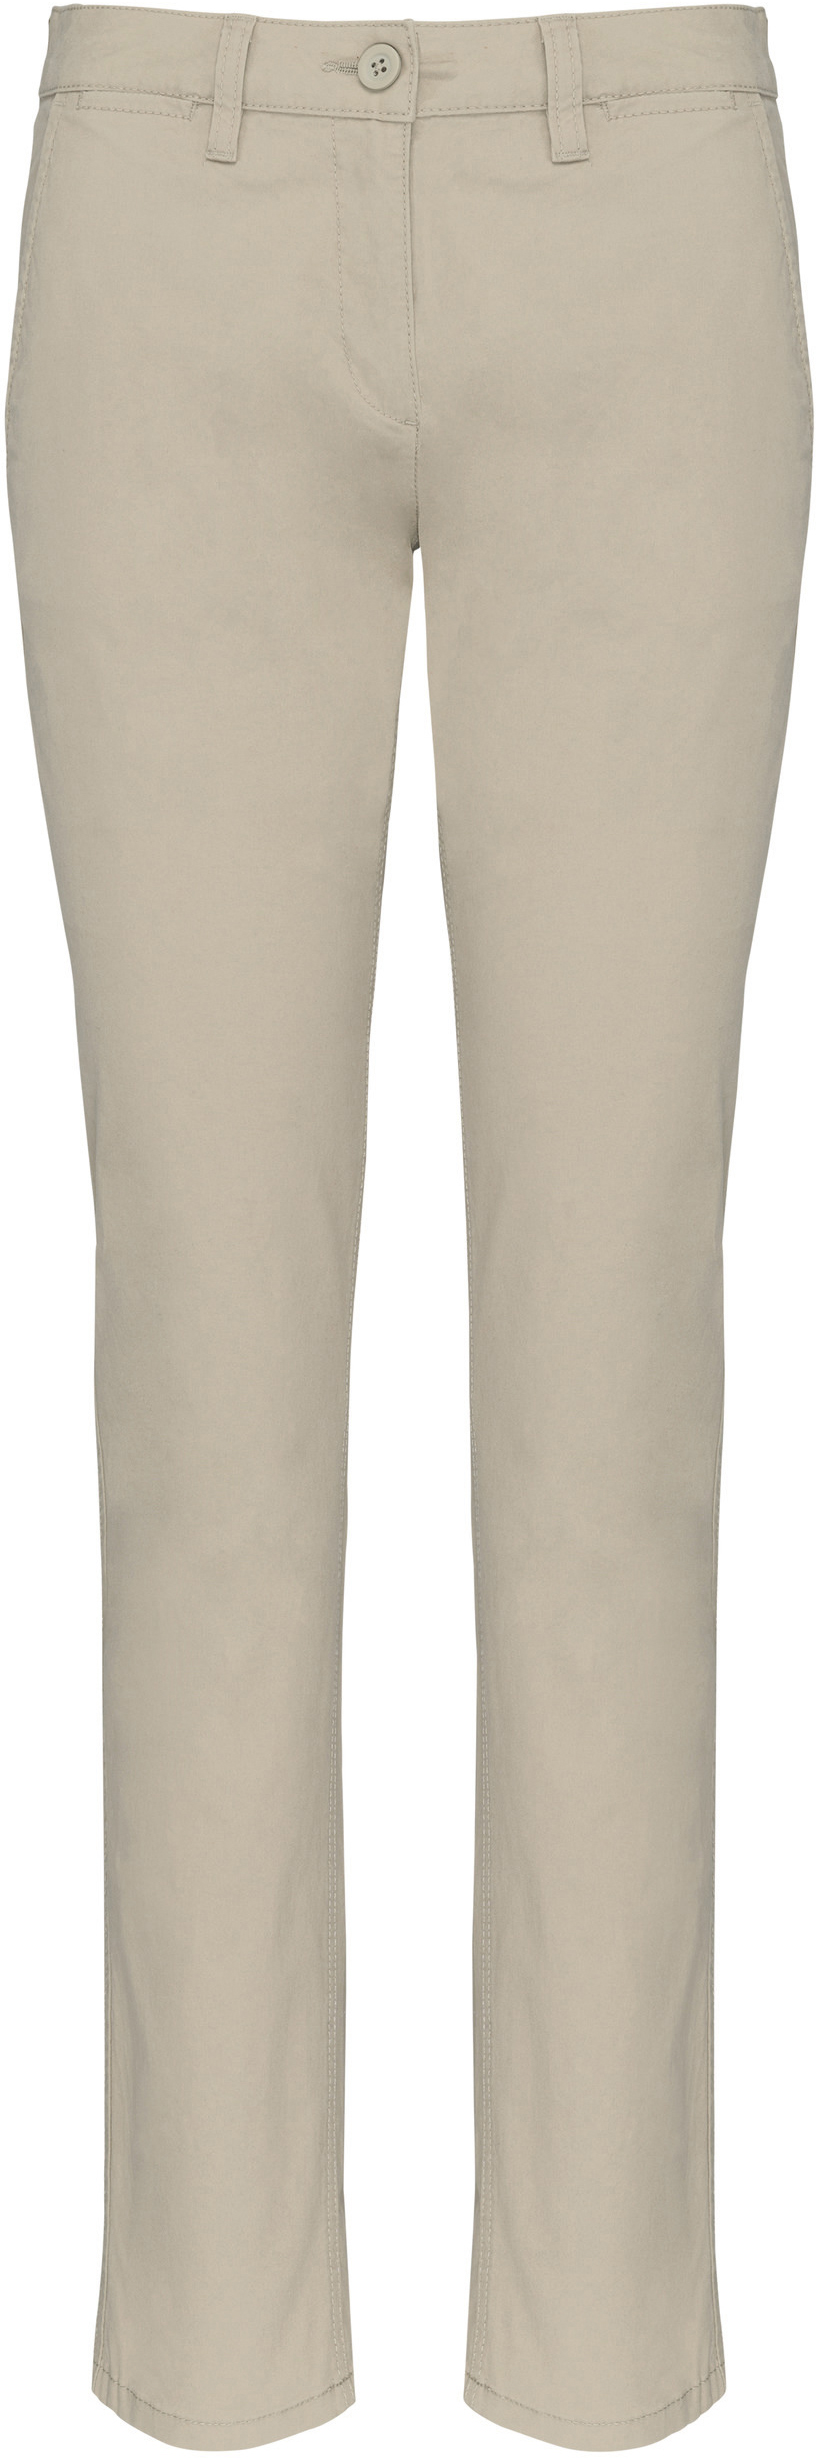 Dámské kalhoty CHINO K741 Barva: naturální, Velikost: 42